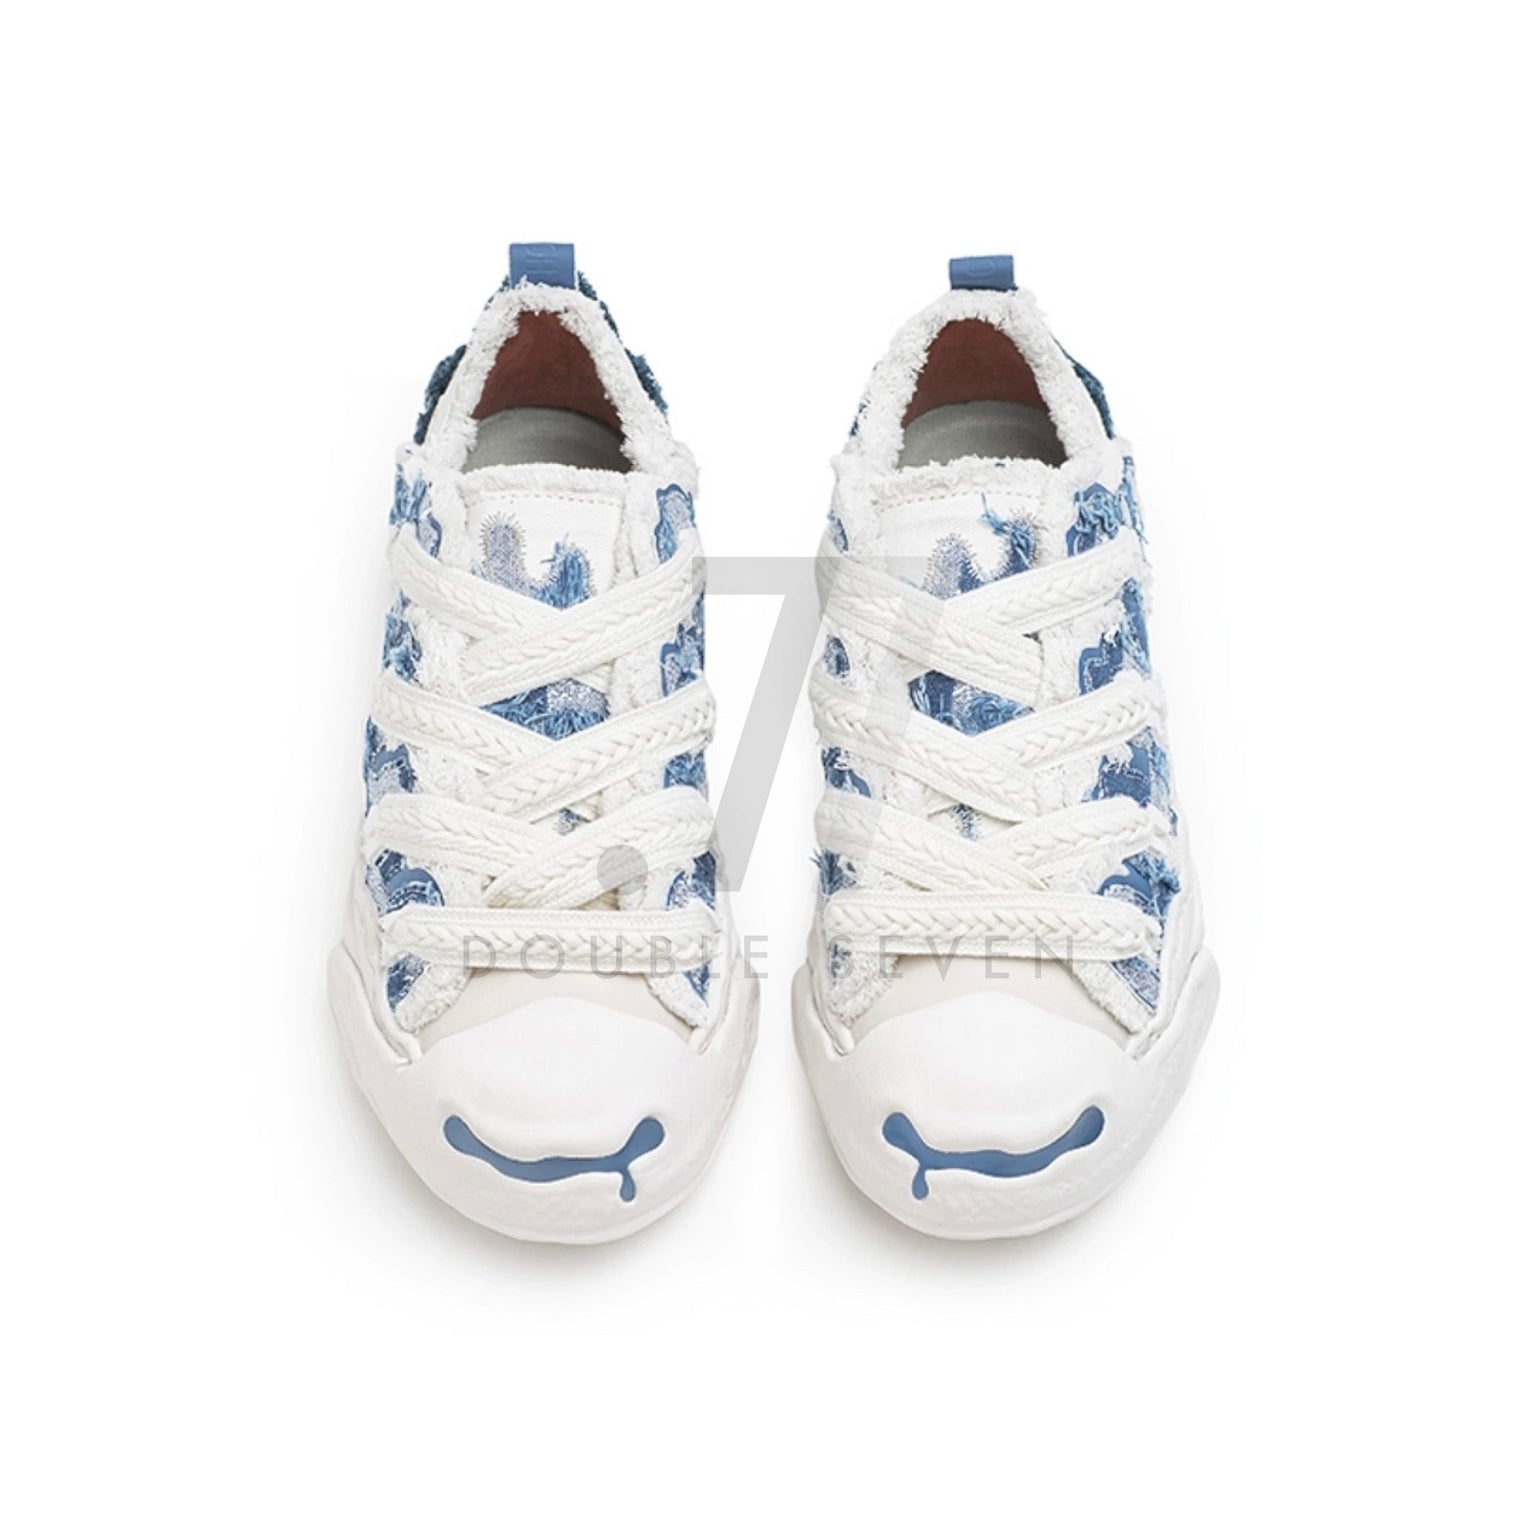 H52 Canvas Low Top Denim Blue Shoes (Preorder)